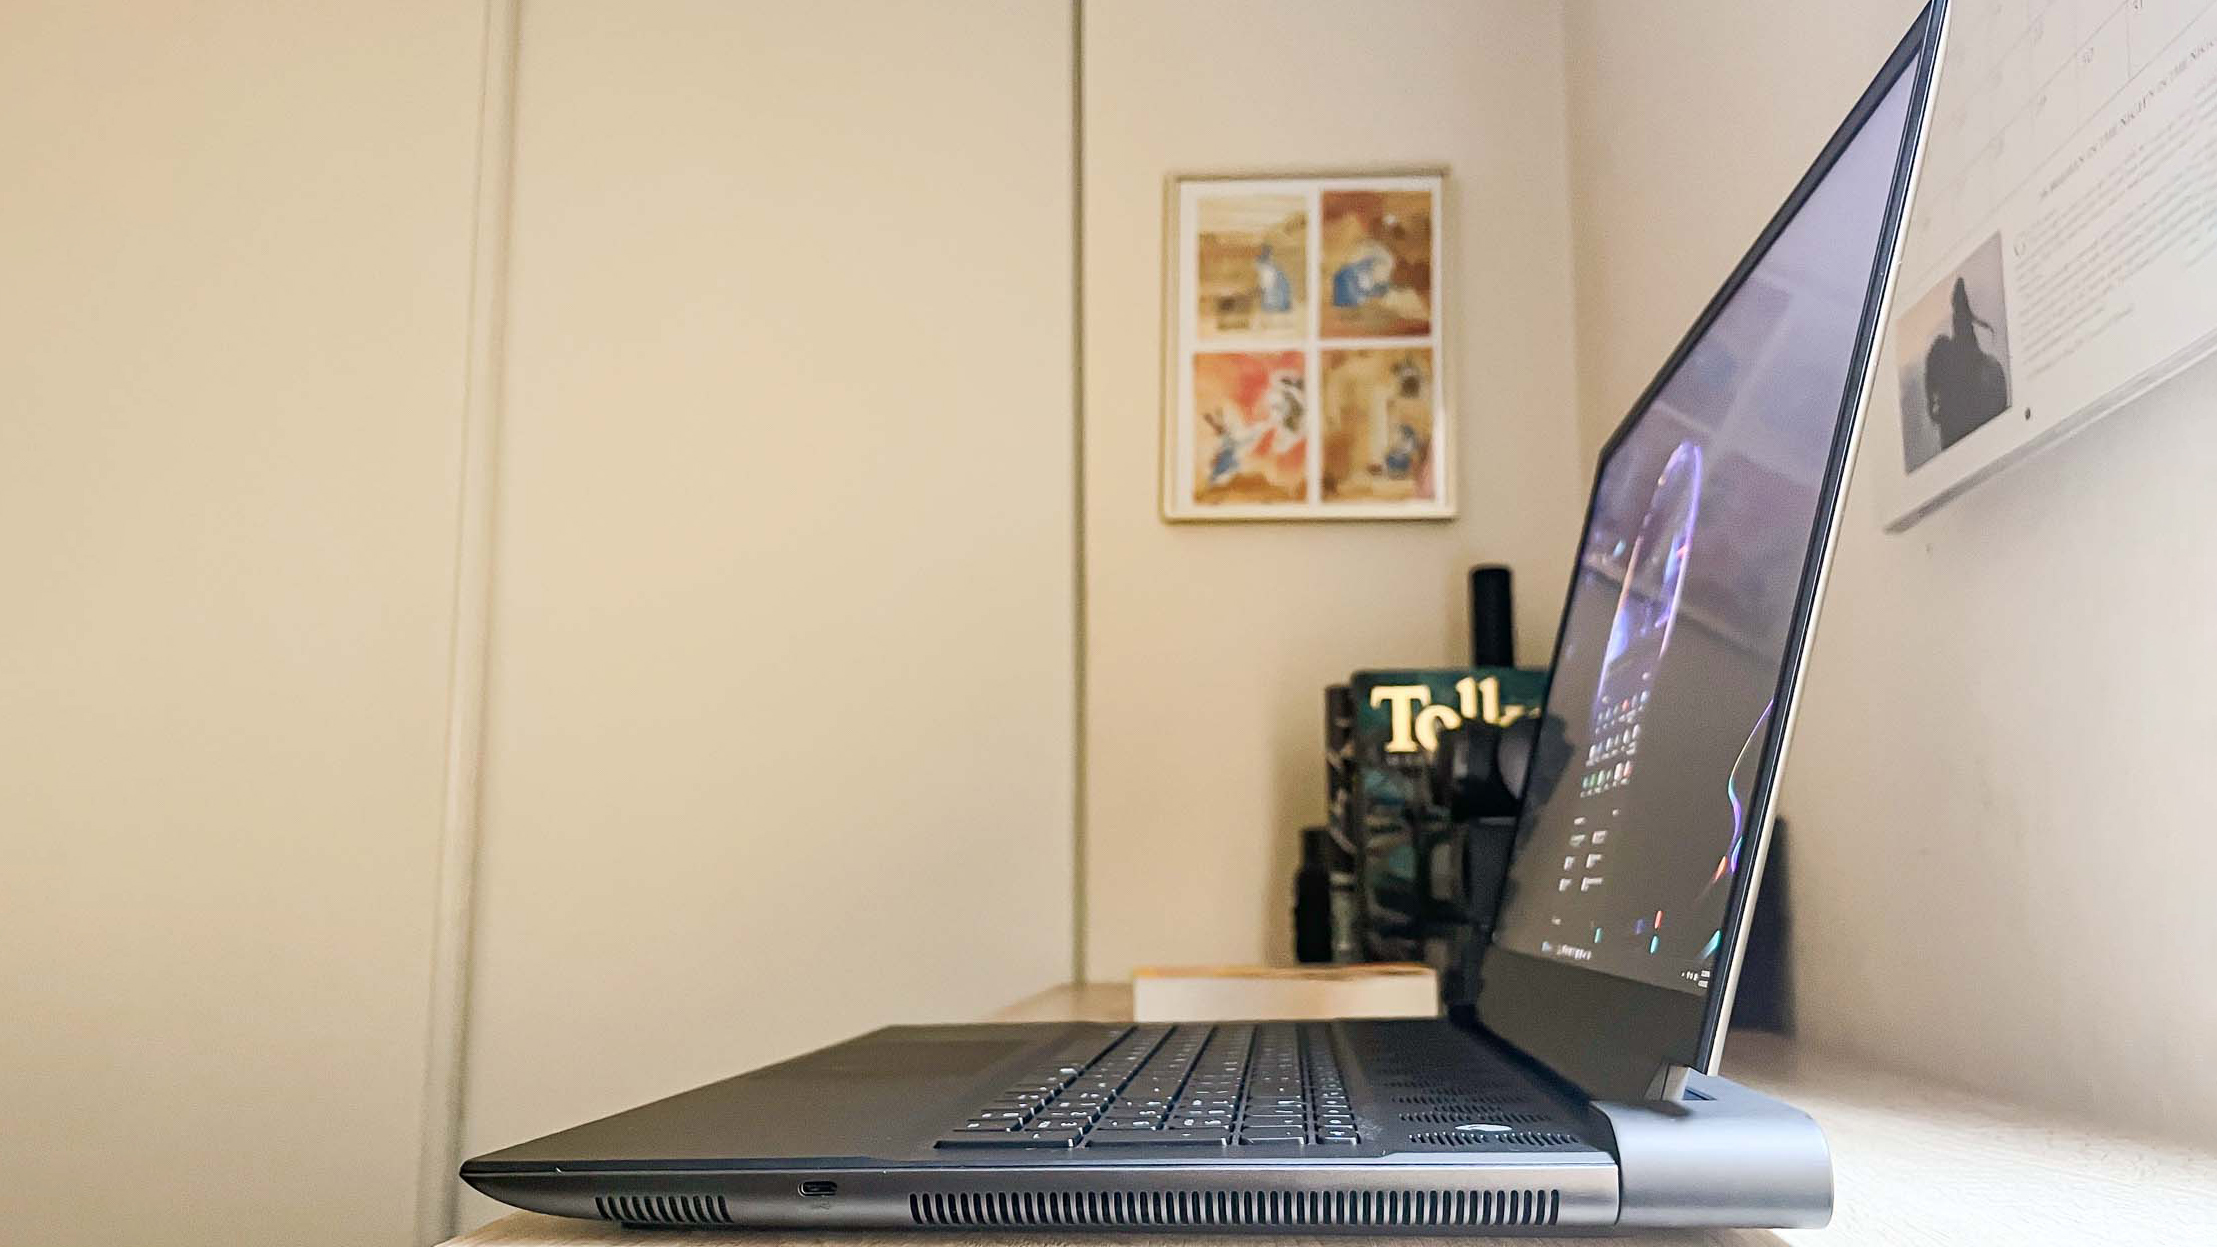 Alienware m18 review unit on desk